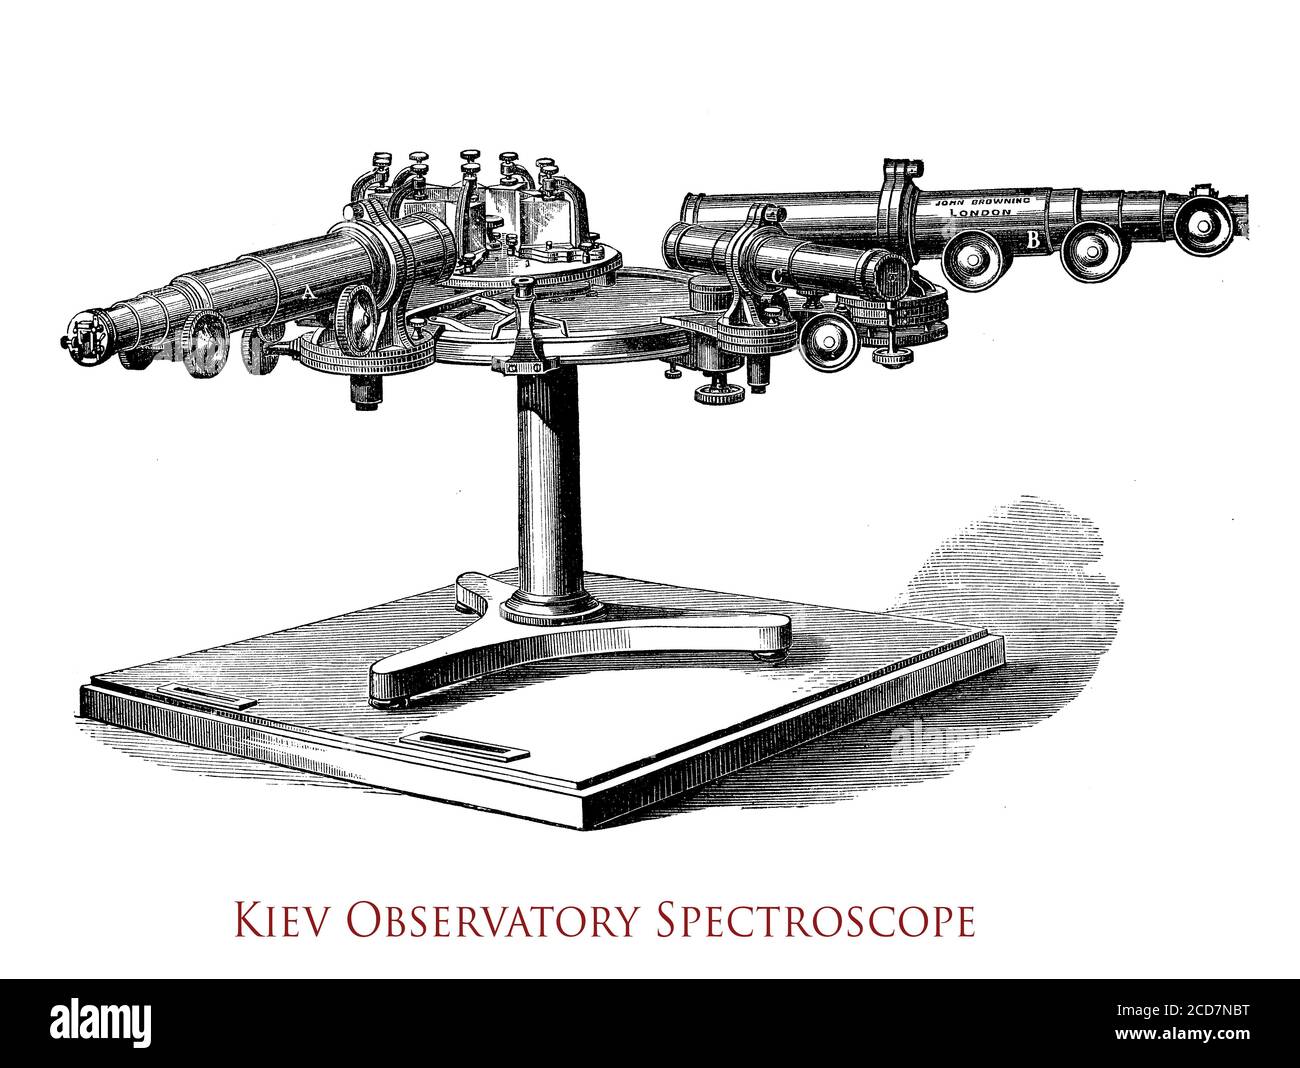 Spektroskop der Observatoy der Universität Kiew ermöglicht Sonnenprozesse und Sonnenaktivität zu studieren Stockfoto